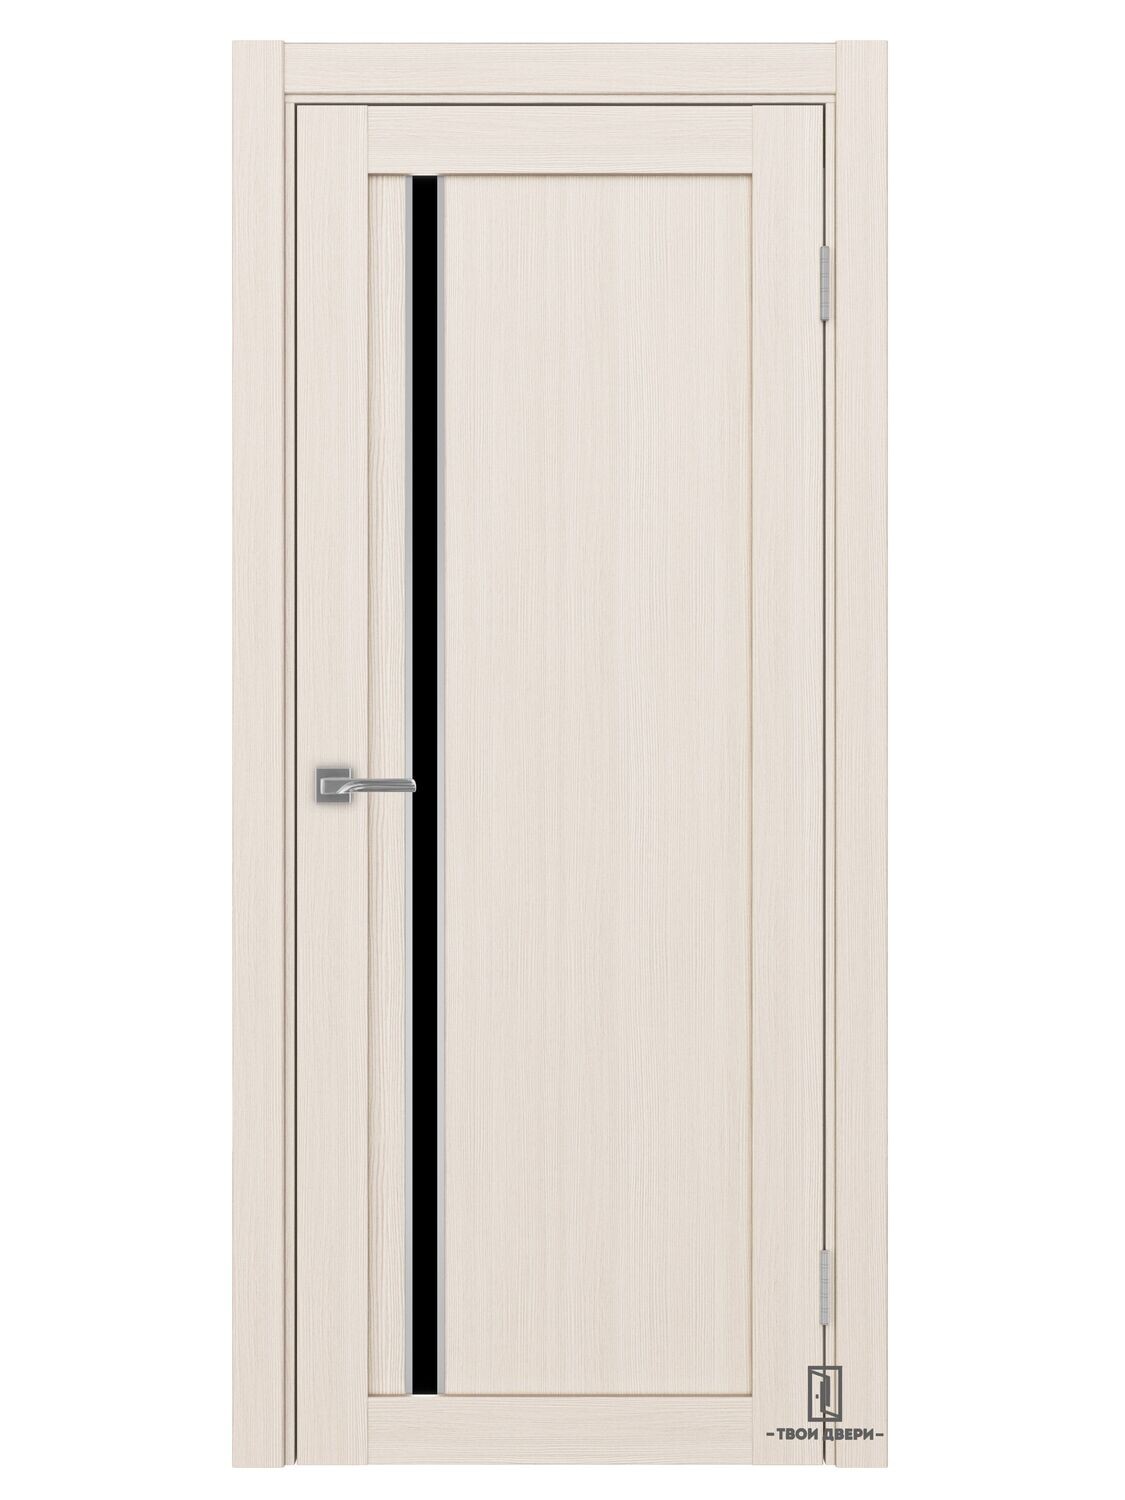 Дверь межкомнатная АПС 527 лакобель (молдинги), ясень перламутровый